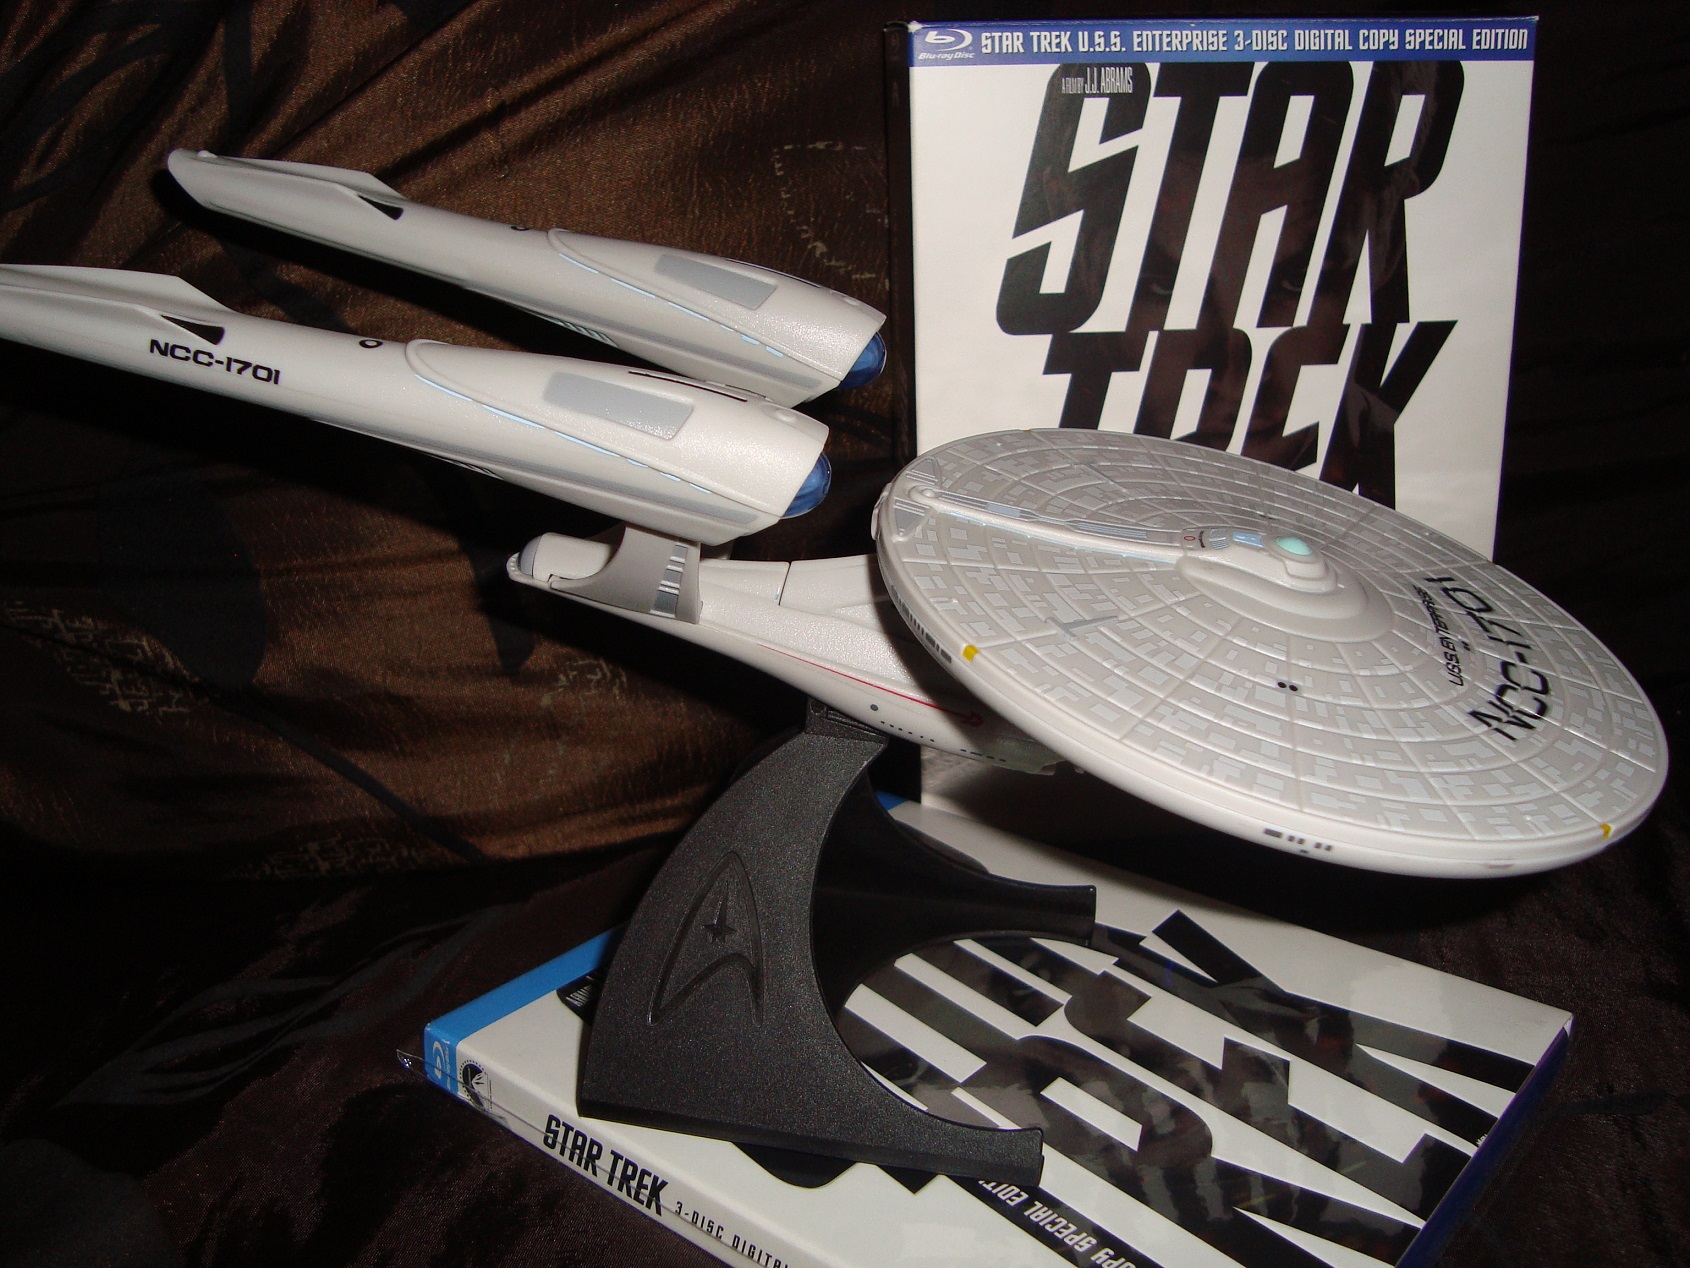 Star Trek (2009) Target Exclusive